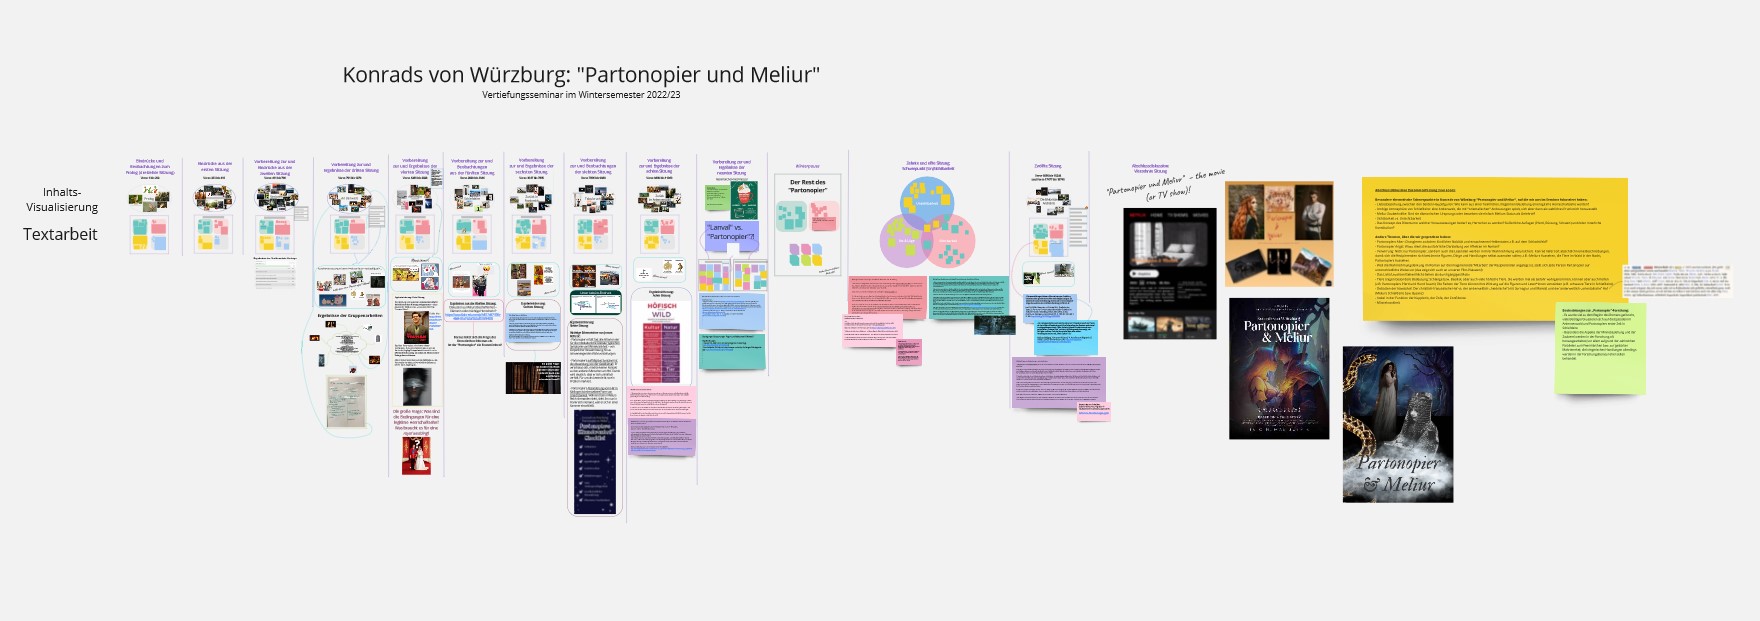 Das digitale Whiteboard zum Seminar „Konrads von Würzburg: Partonopier und Meliur“ hat viele verschiedene Notizen, Bilder, Screenshots und Textblasen. Die Inhalte sind kategorisiert, aber es ist aus der Entfernung zu den Texten nicht lesbar, wie die Kategorien betitelt sind.